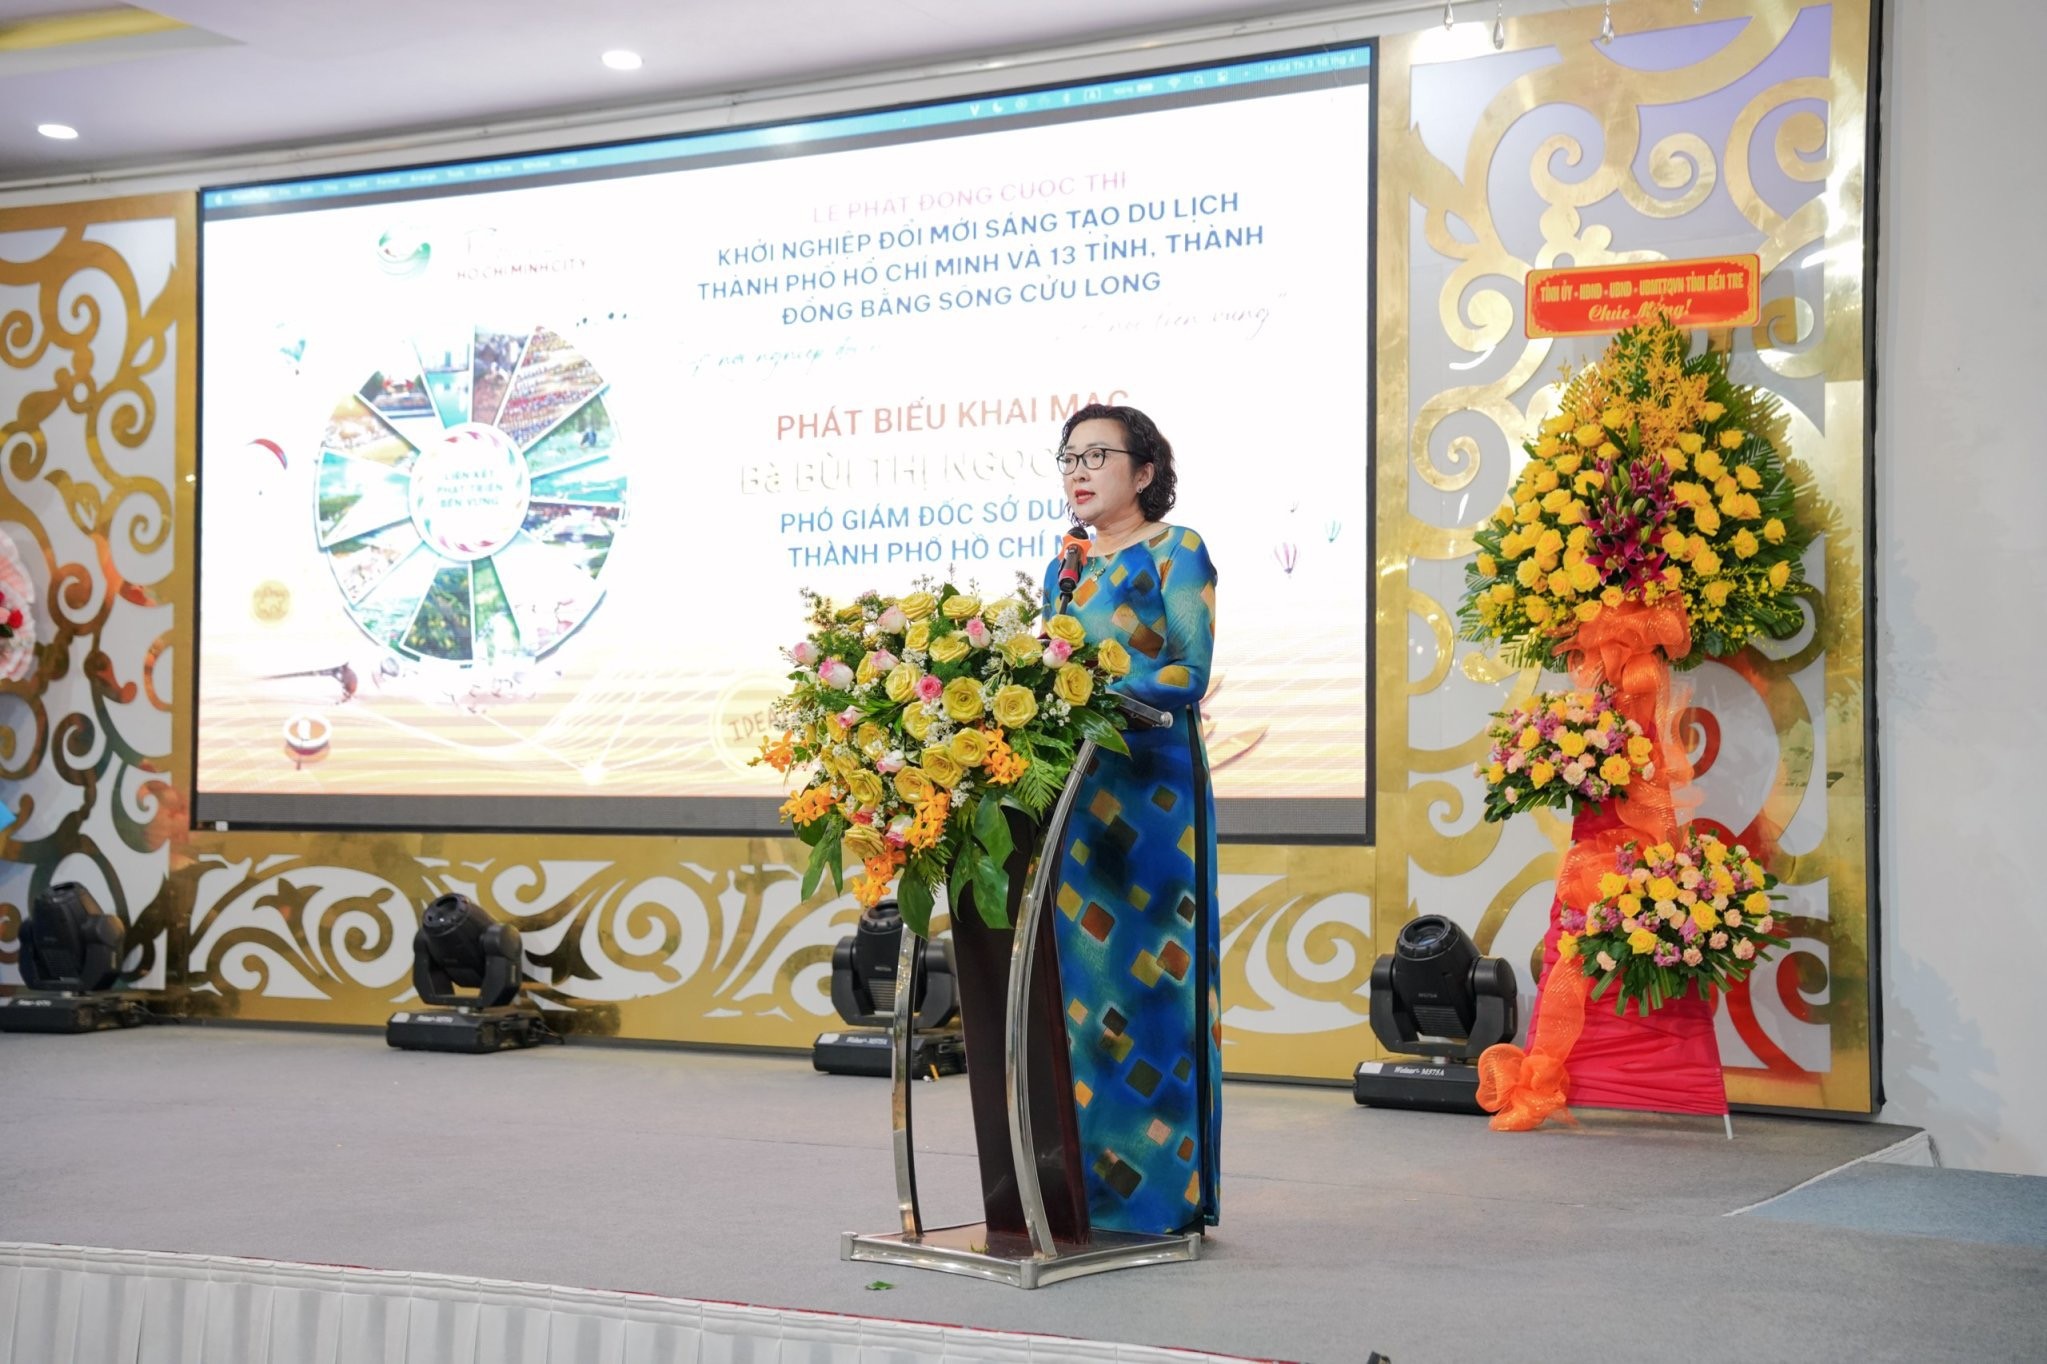 Phát động Cuộc thi Khởi nghiệp, đổi mới sáng tạo du lịch thành phố Hồ Chí Minh năm 2024